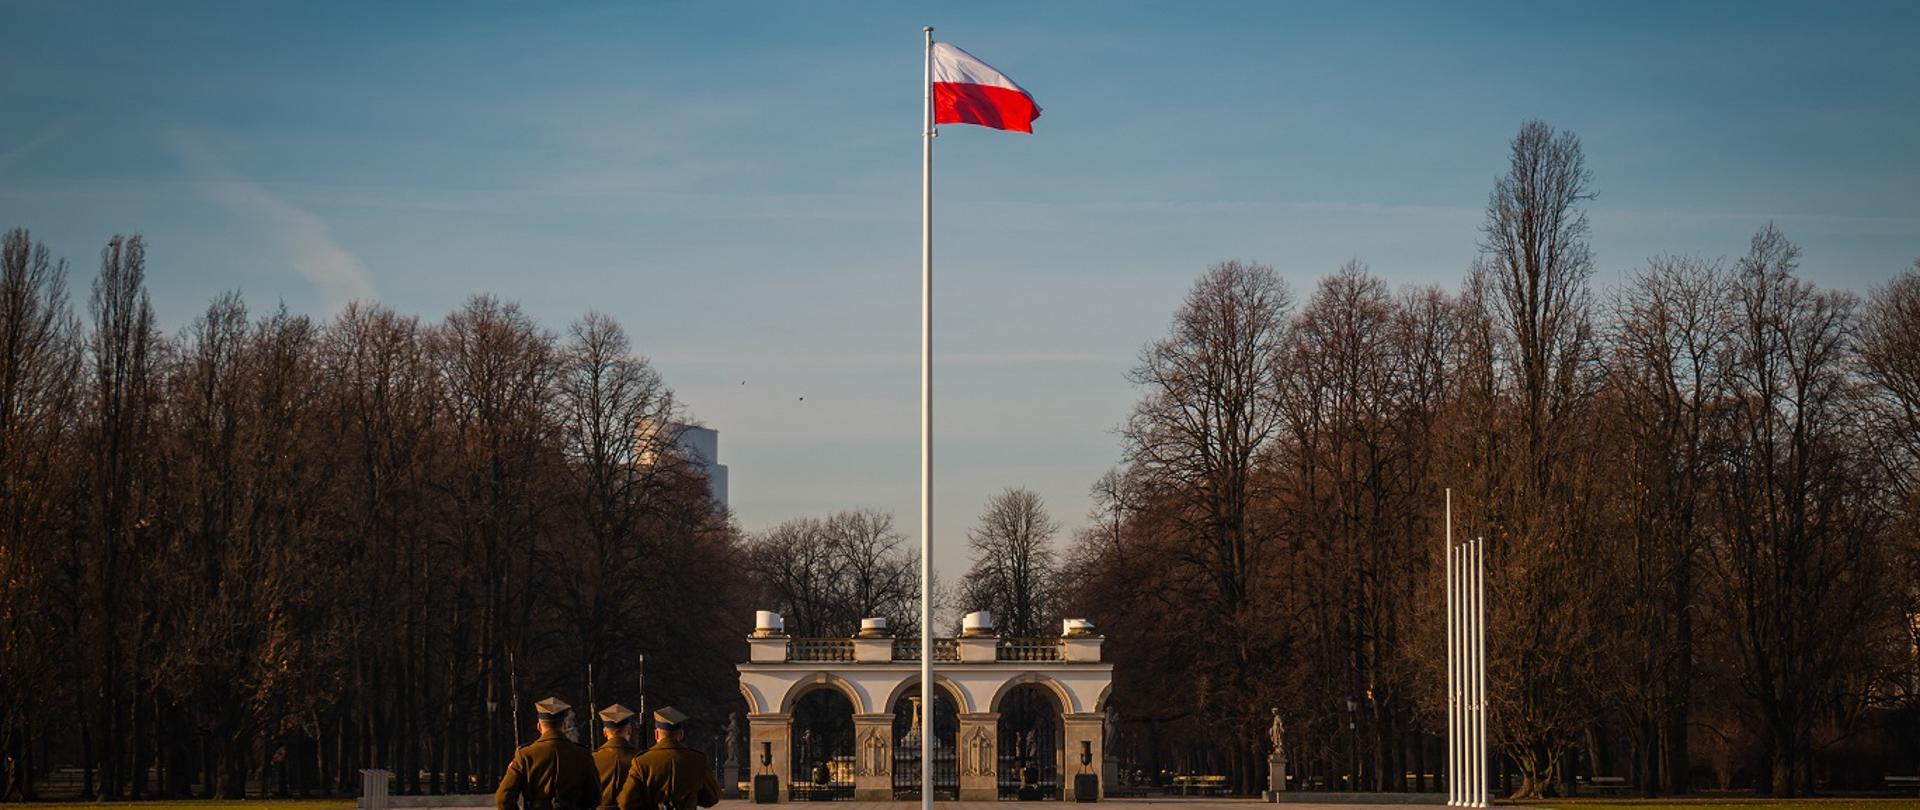 trzech polskich żołnierzy maszerujących po placu, na którym stoi maszt z zawieszoną biało-czerwoną flagą